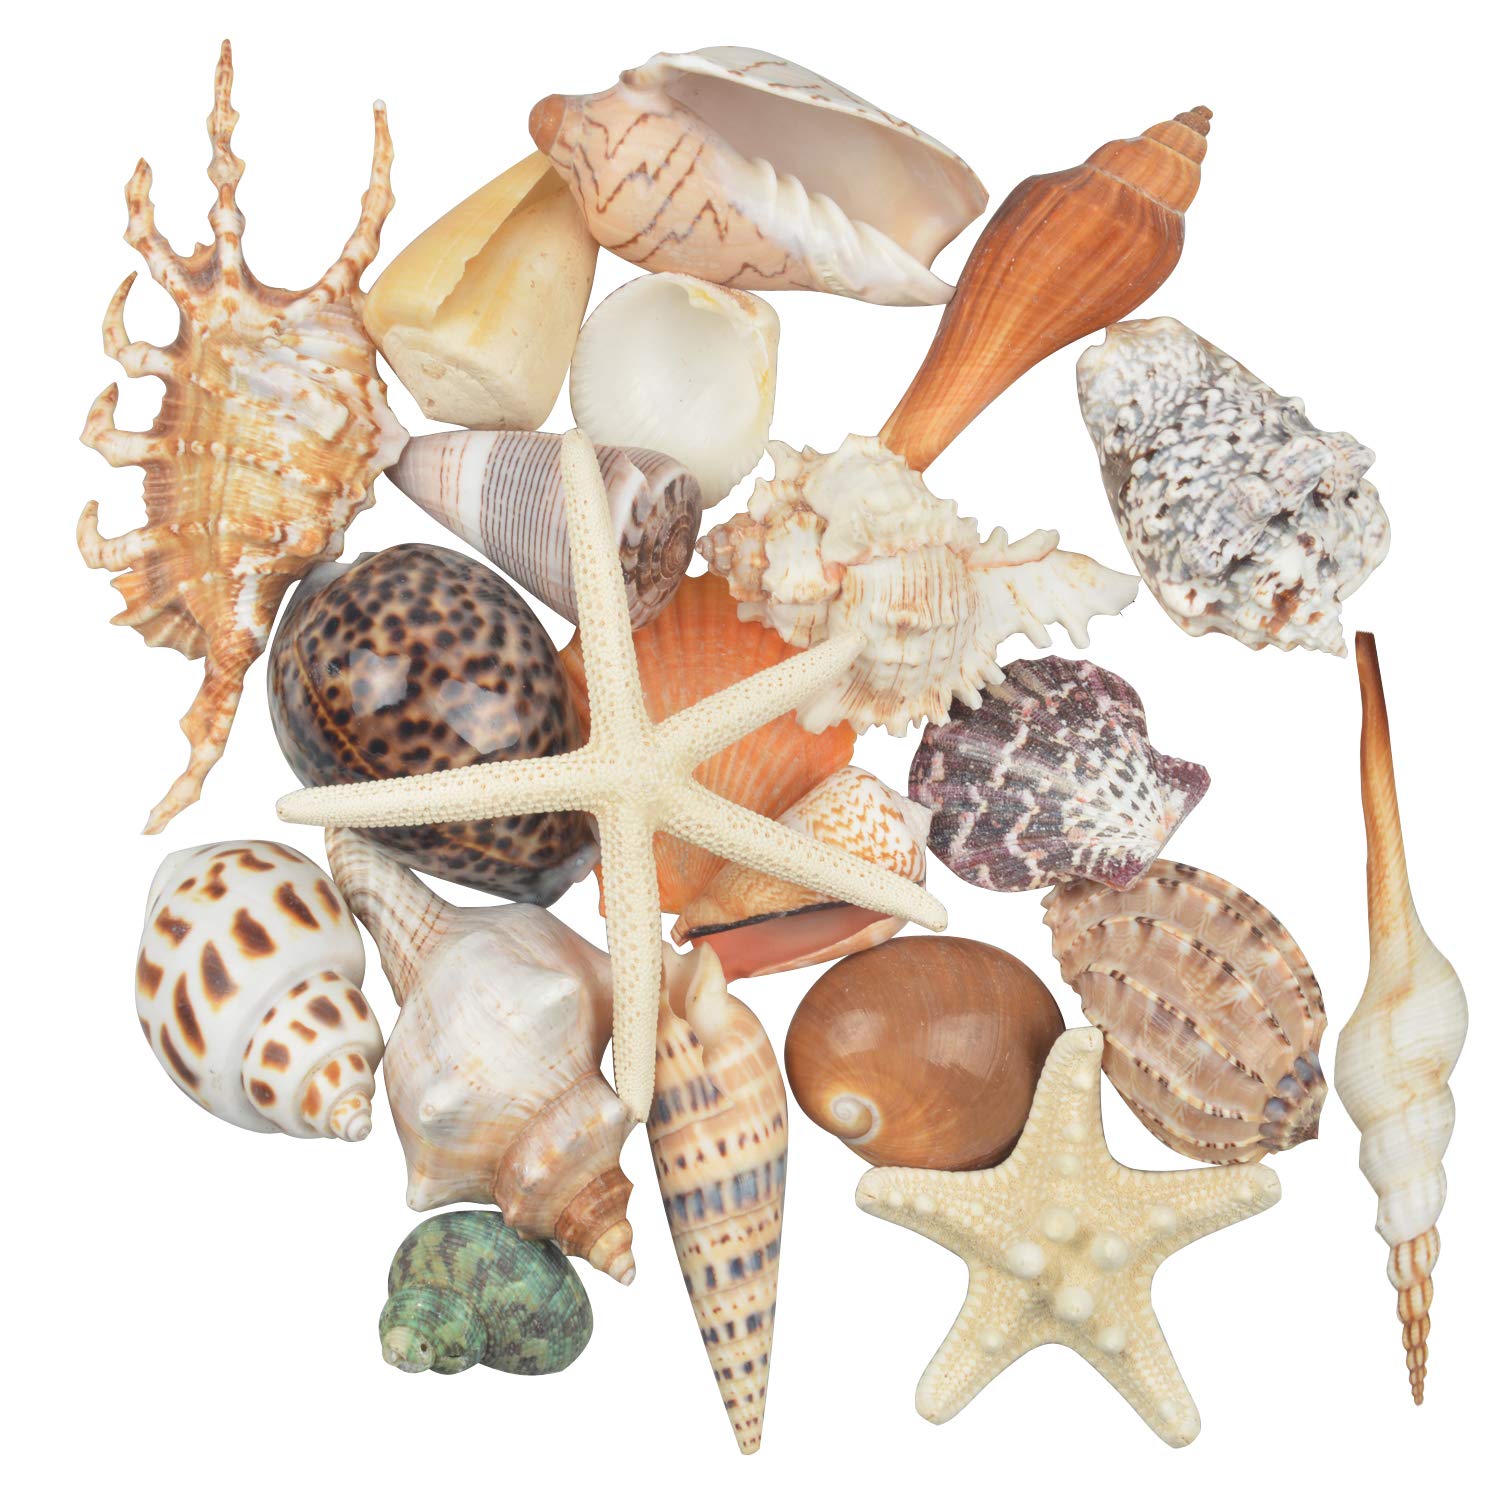 Jangostor 21 PCS Large Sea Shells Mixed Ocean Beach Seashells